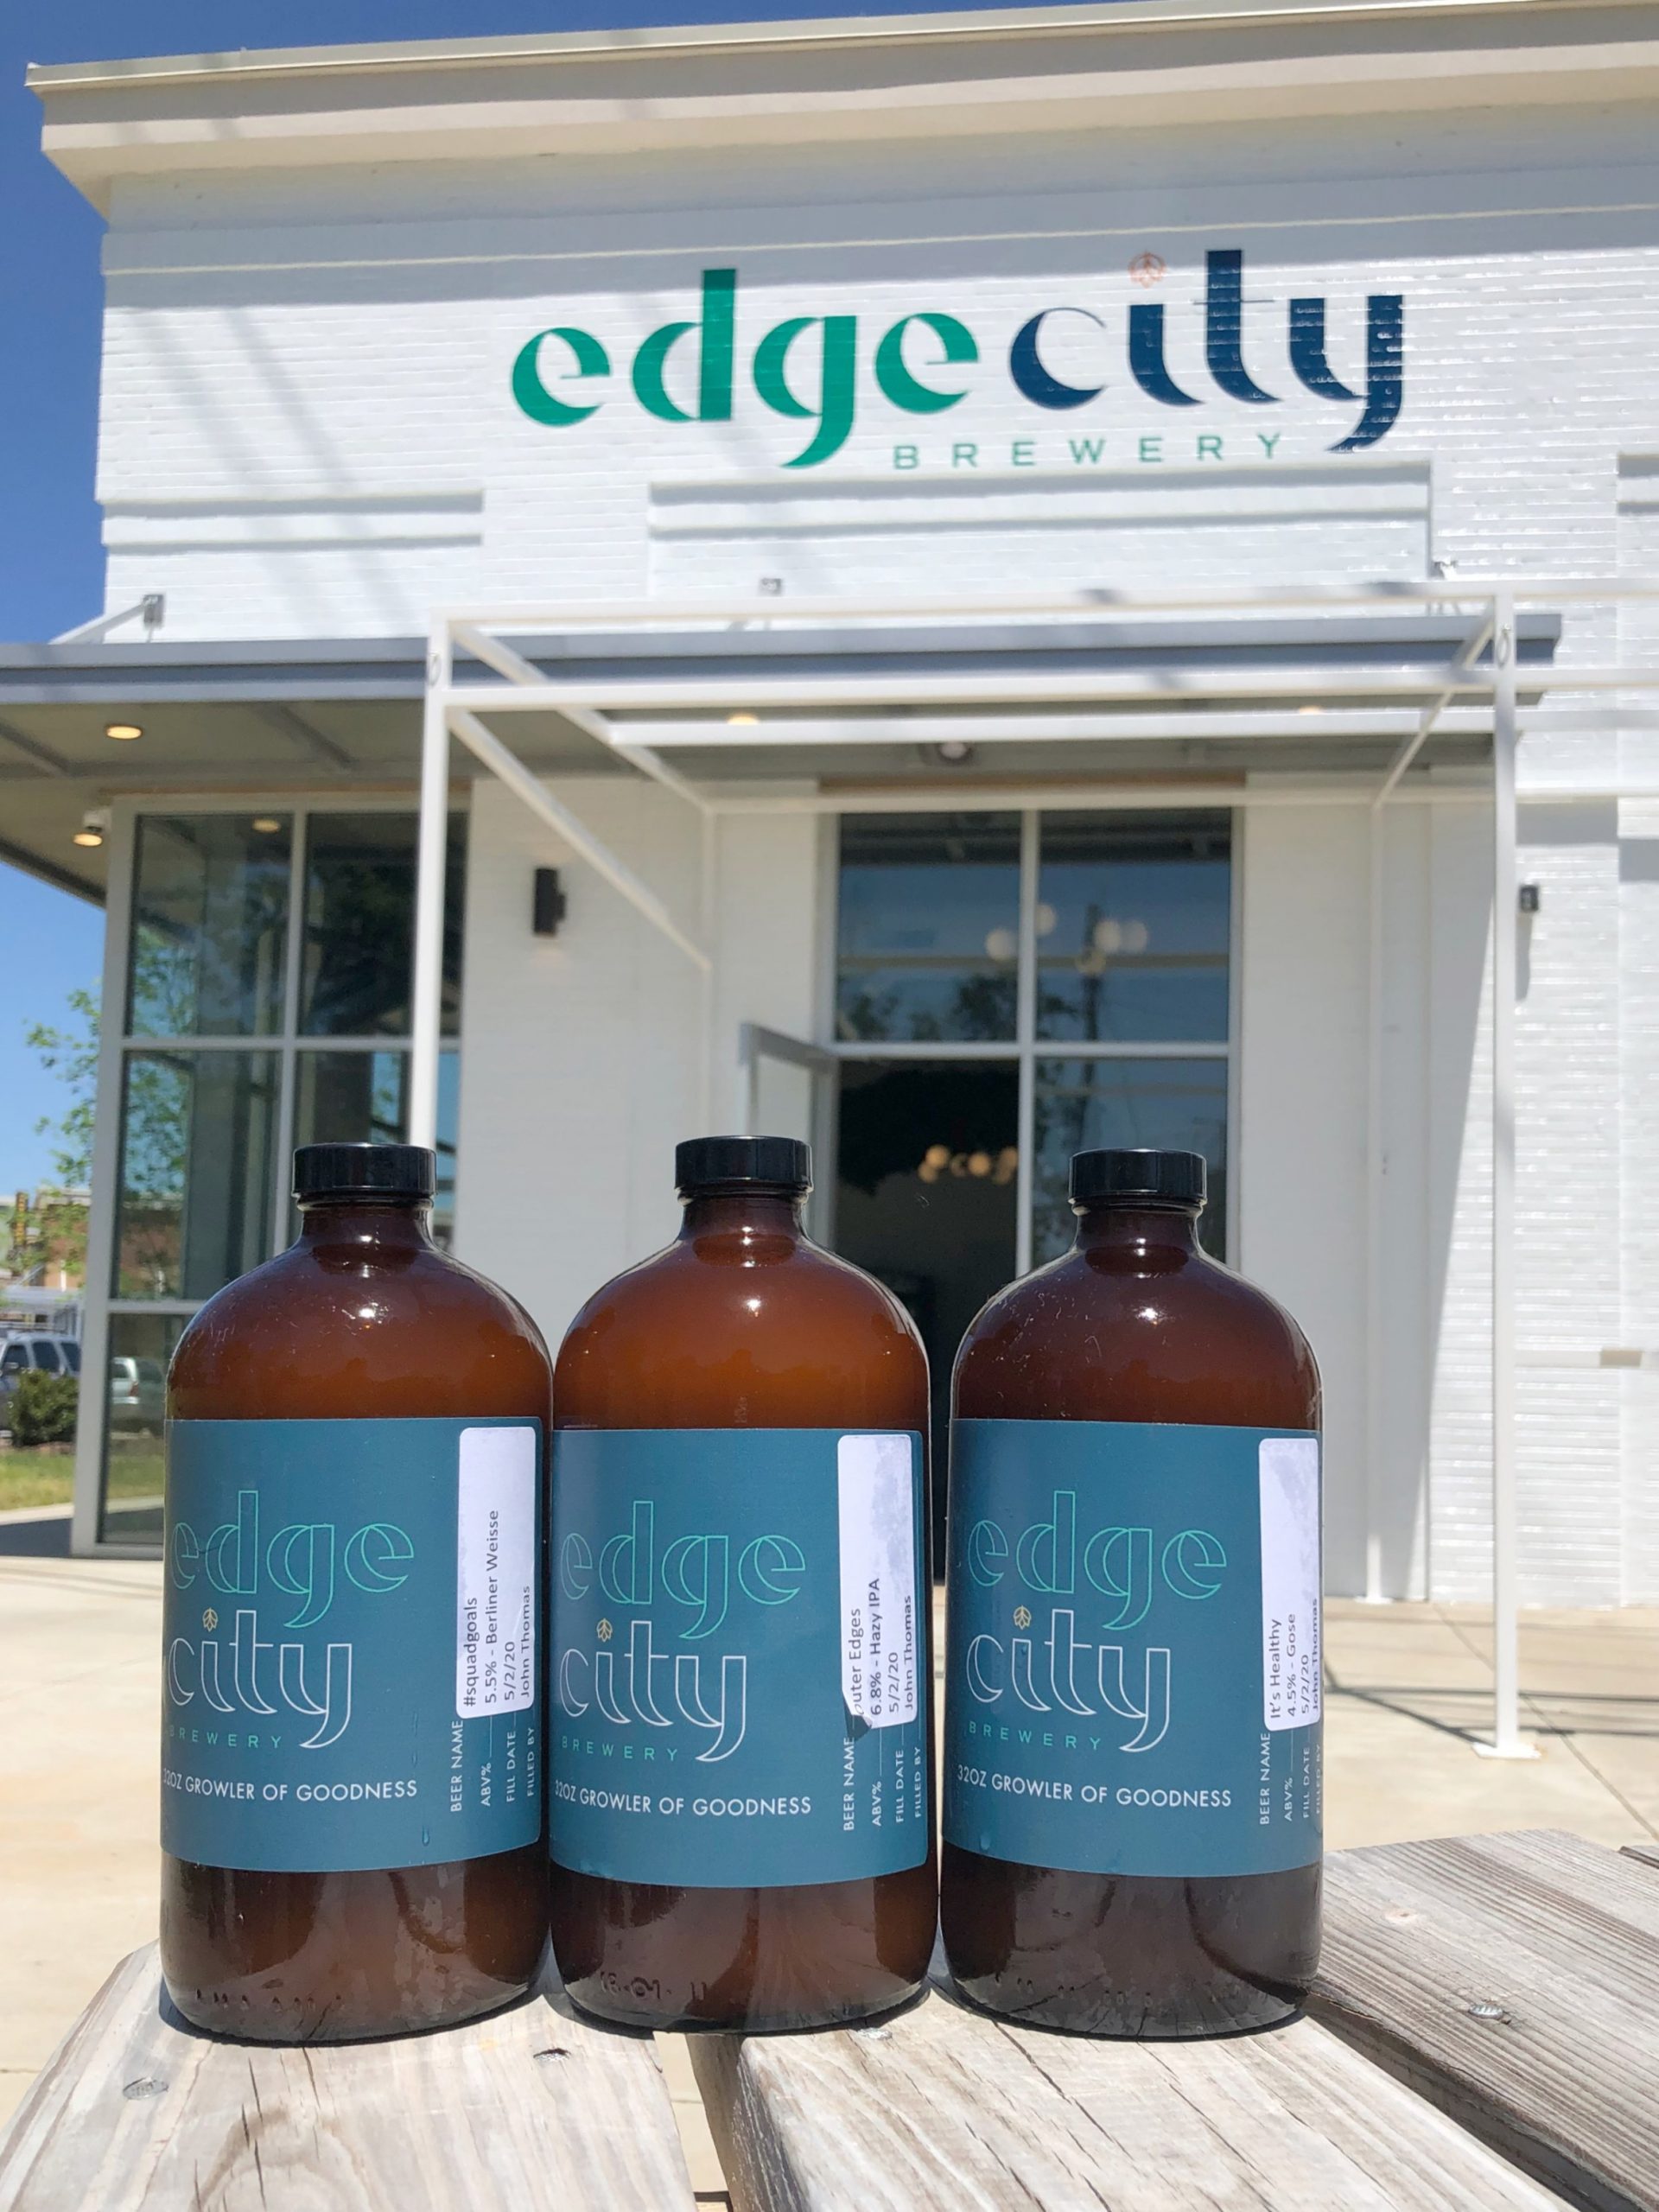 Edge City Brewing